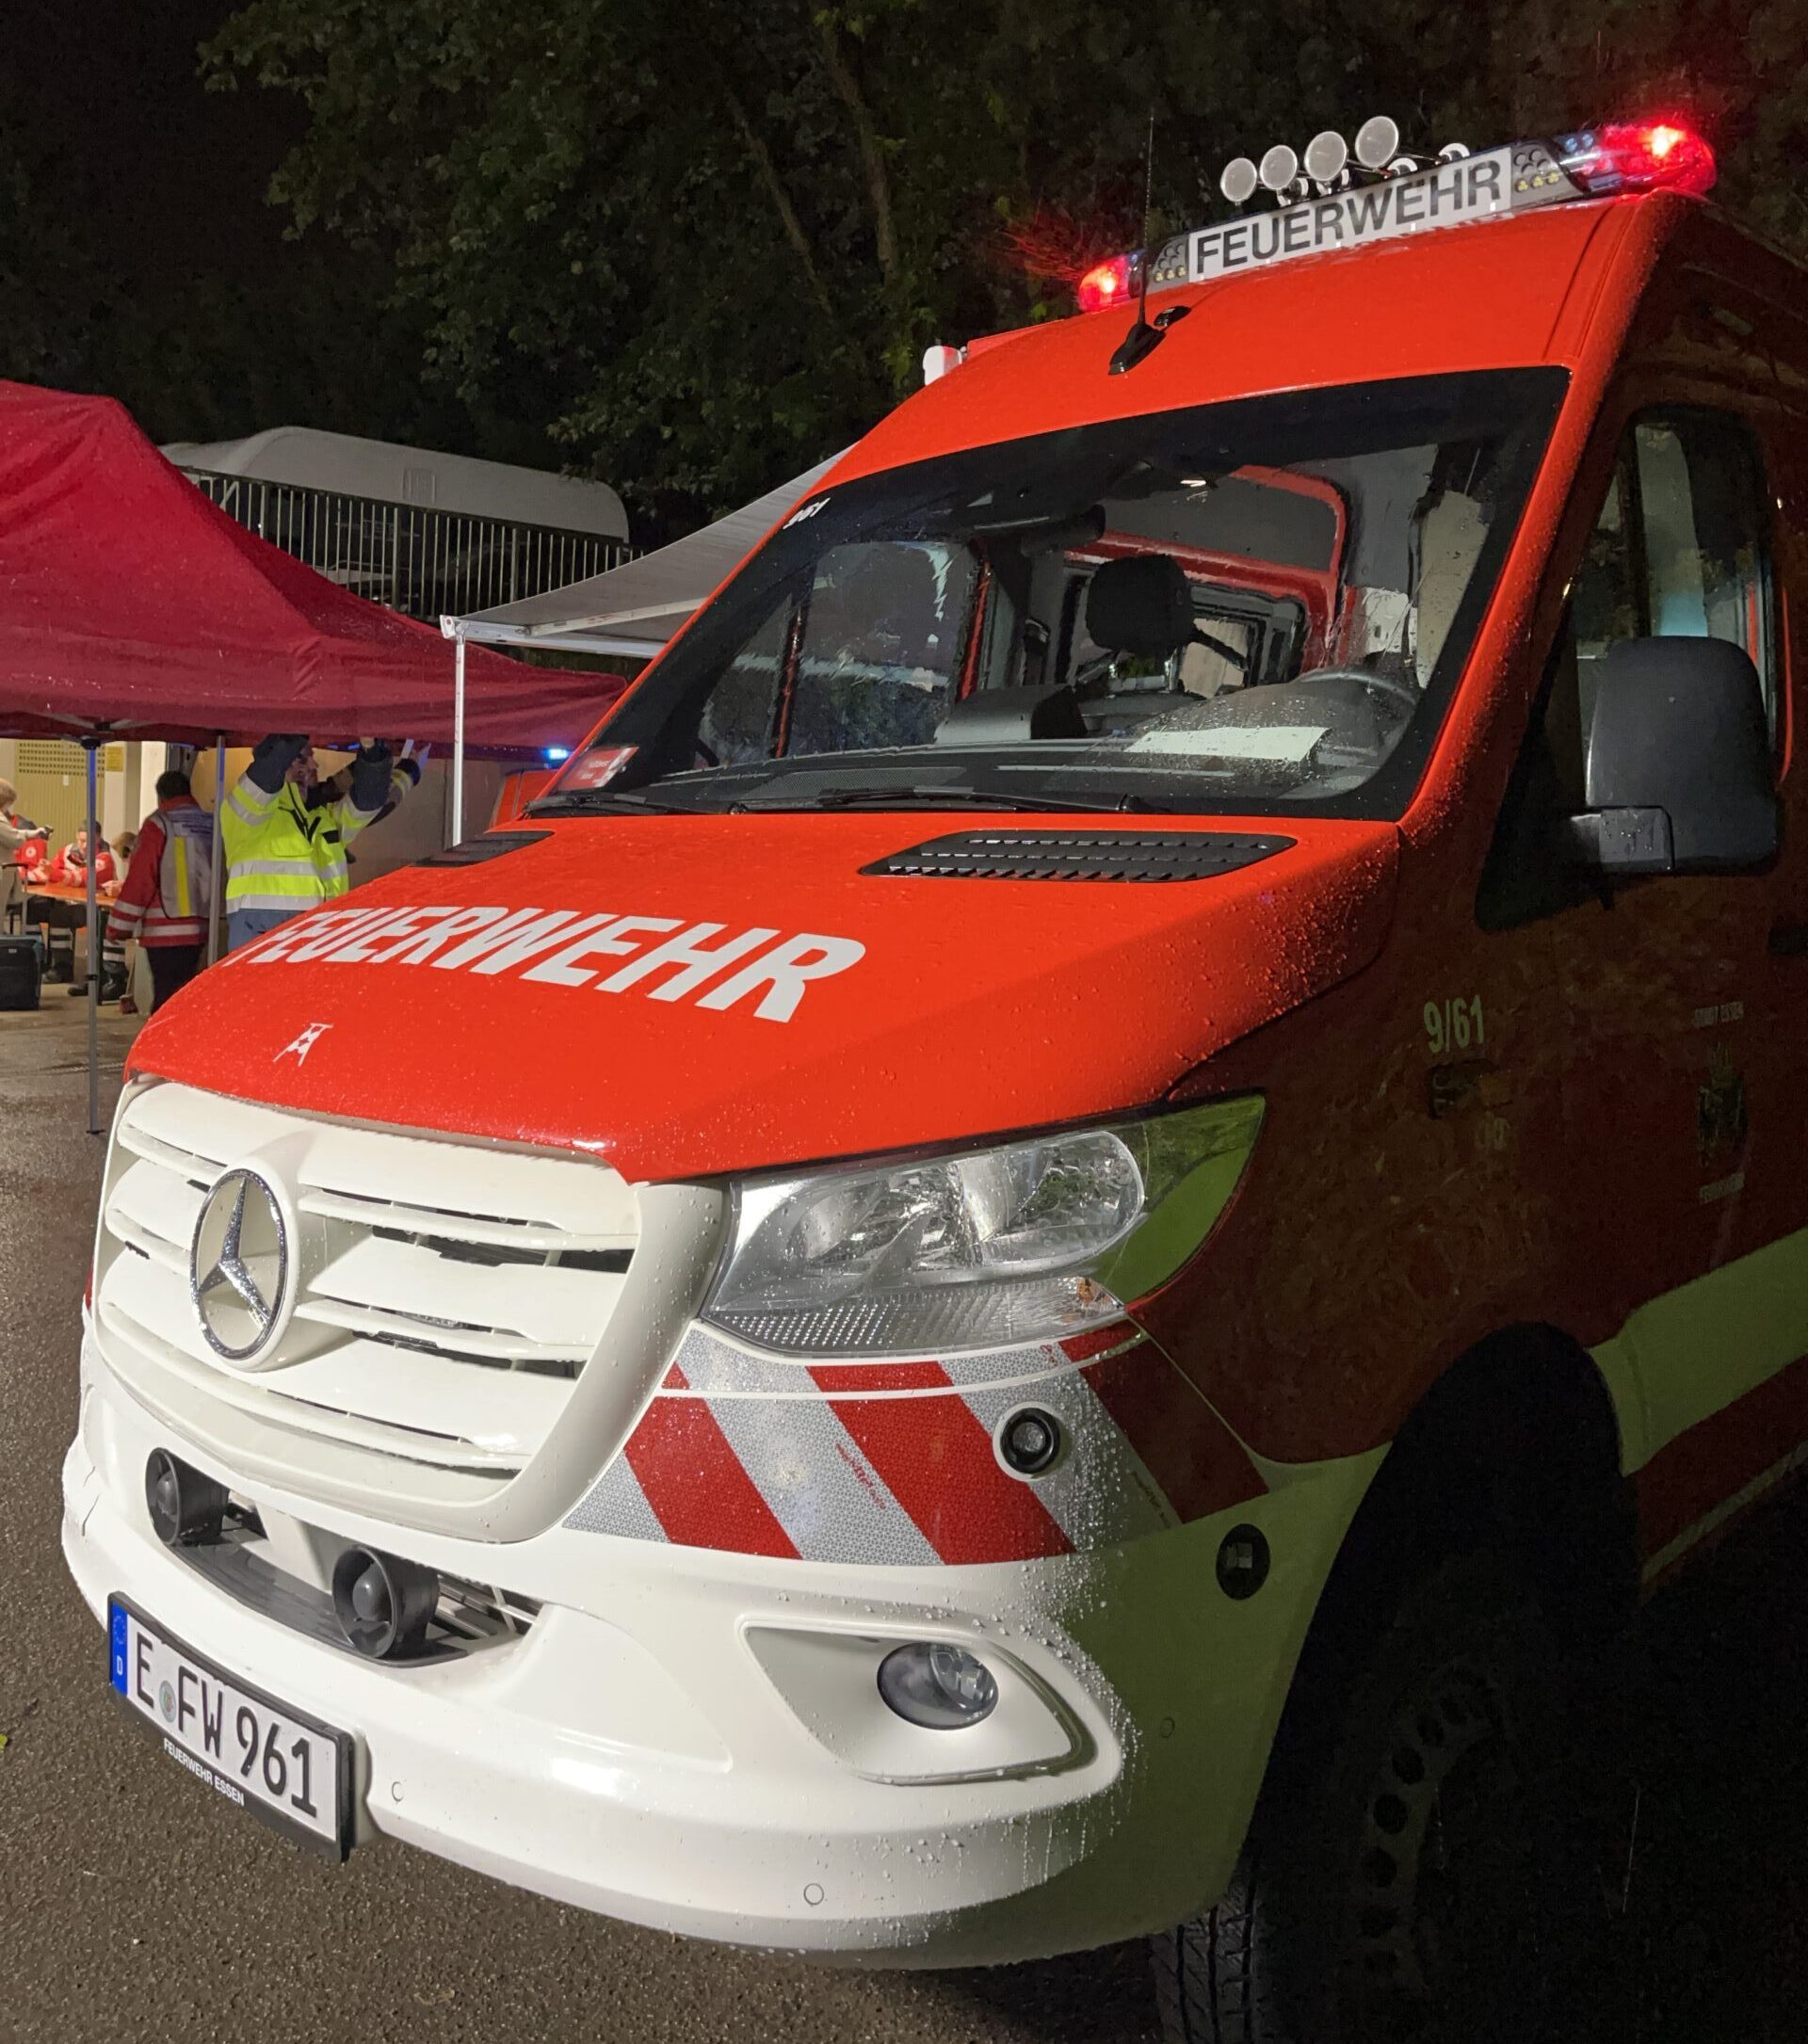 Essen: Evakuierung - Feuerwehr im Einsatz wegen bergbaulicher Gefährdung